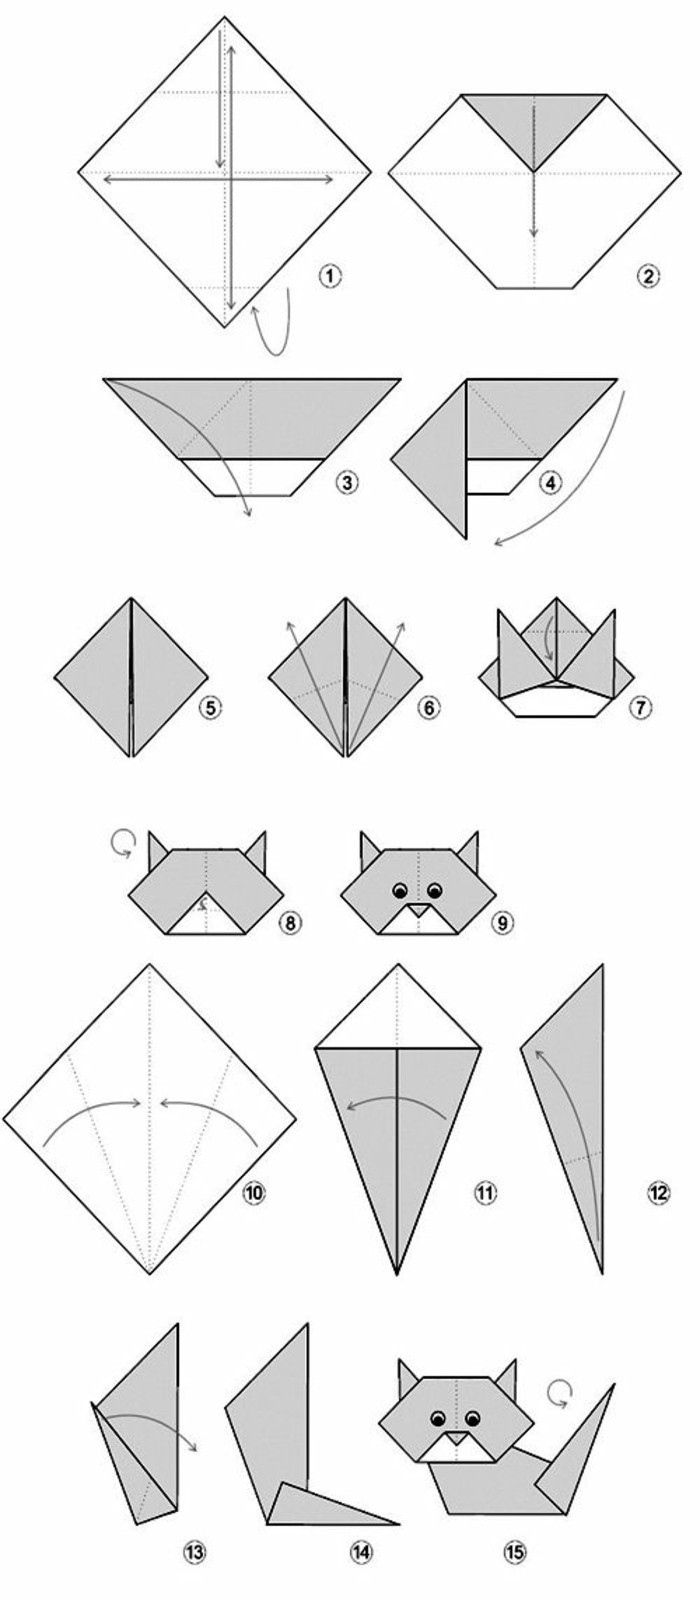 Origami arruga origami plegable instrucción origami plegable técnica técnica de plegado papel-